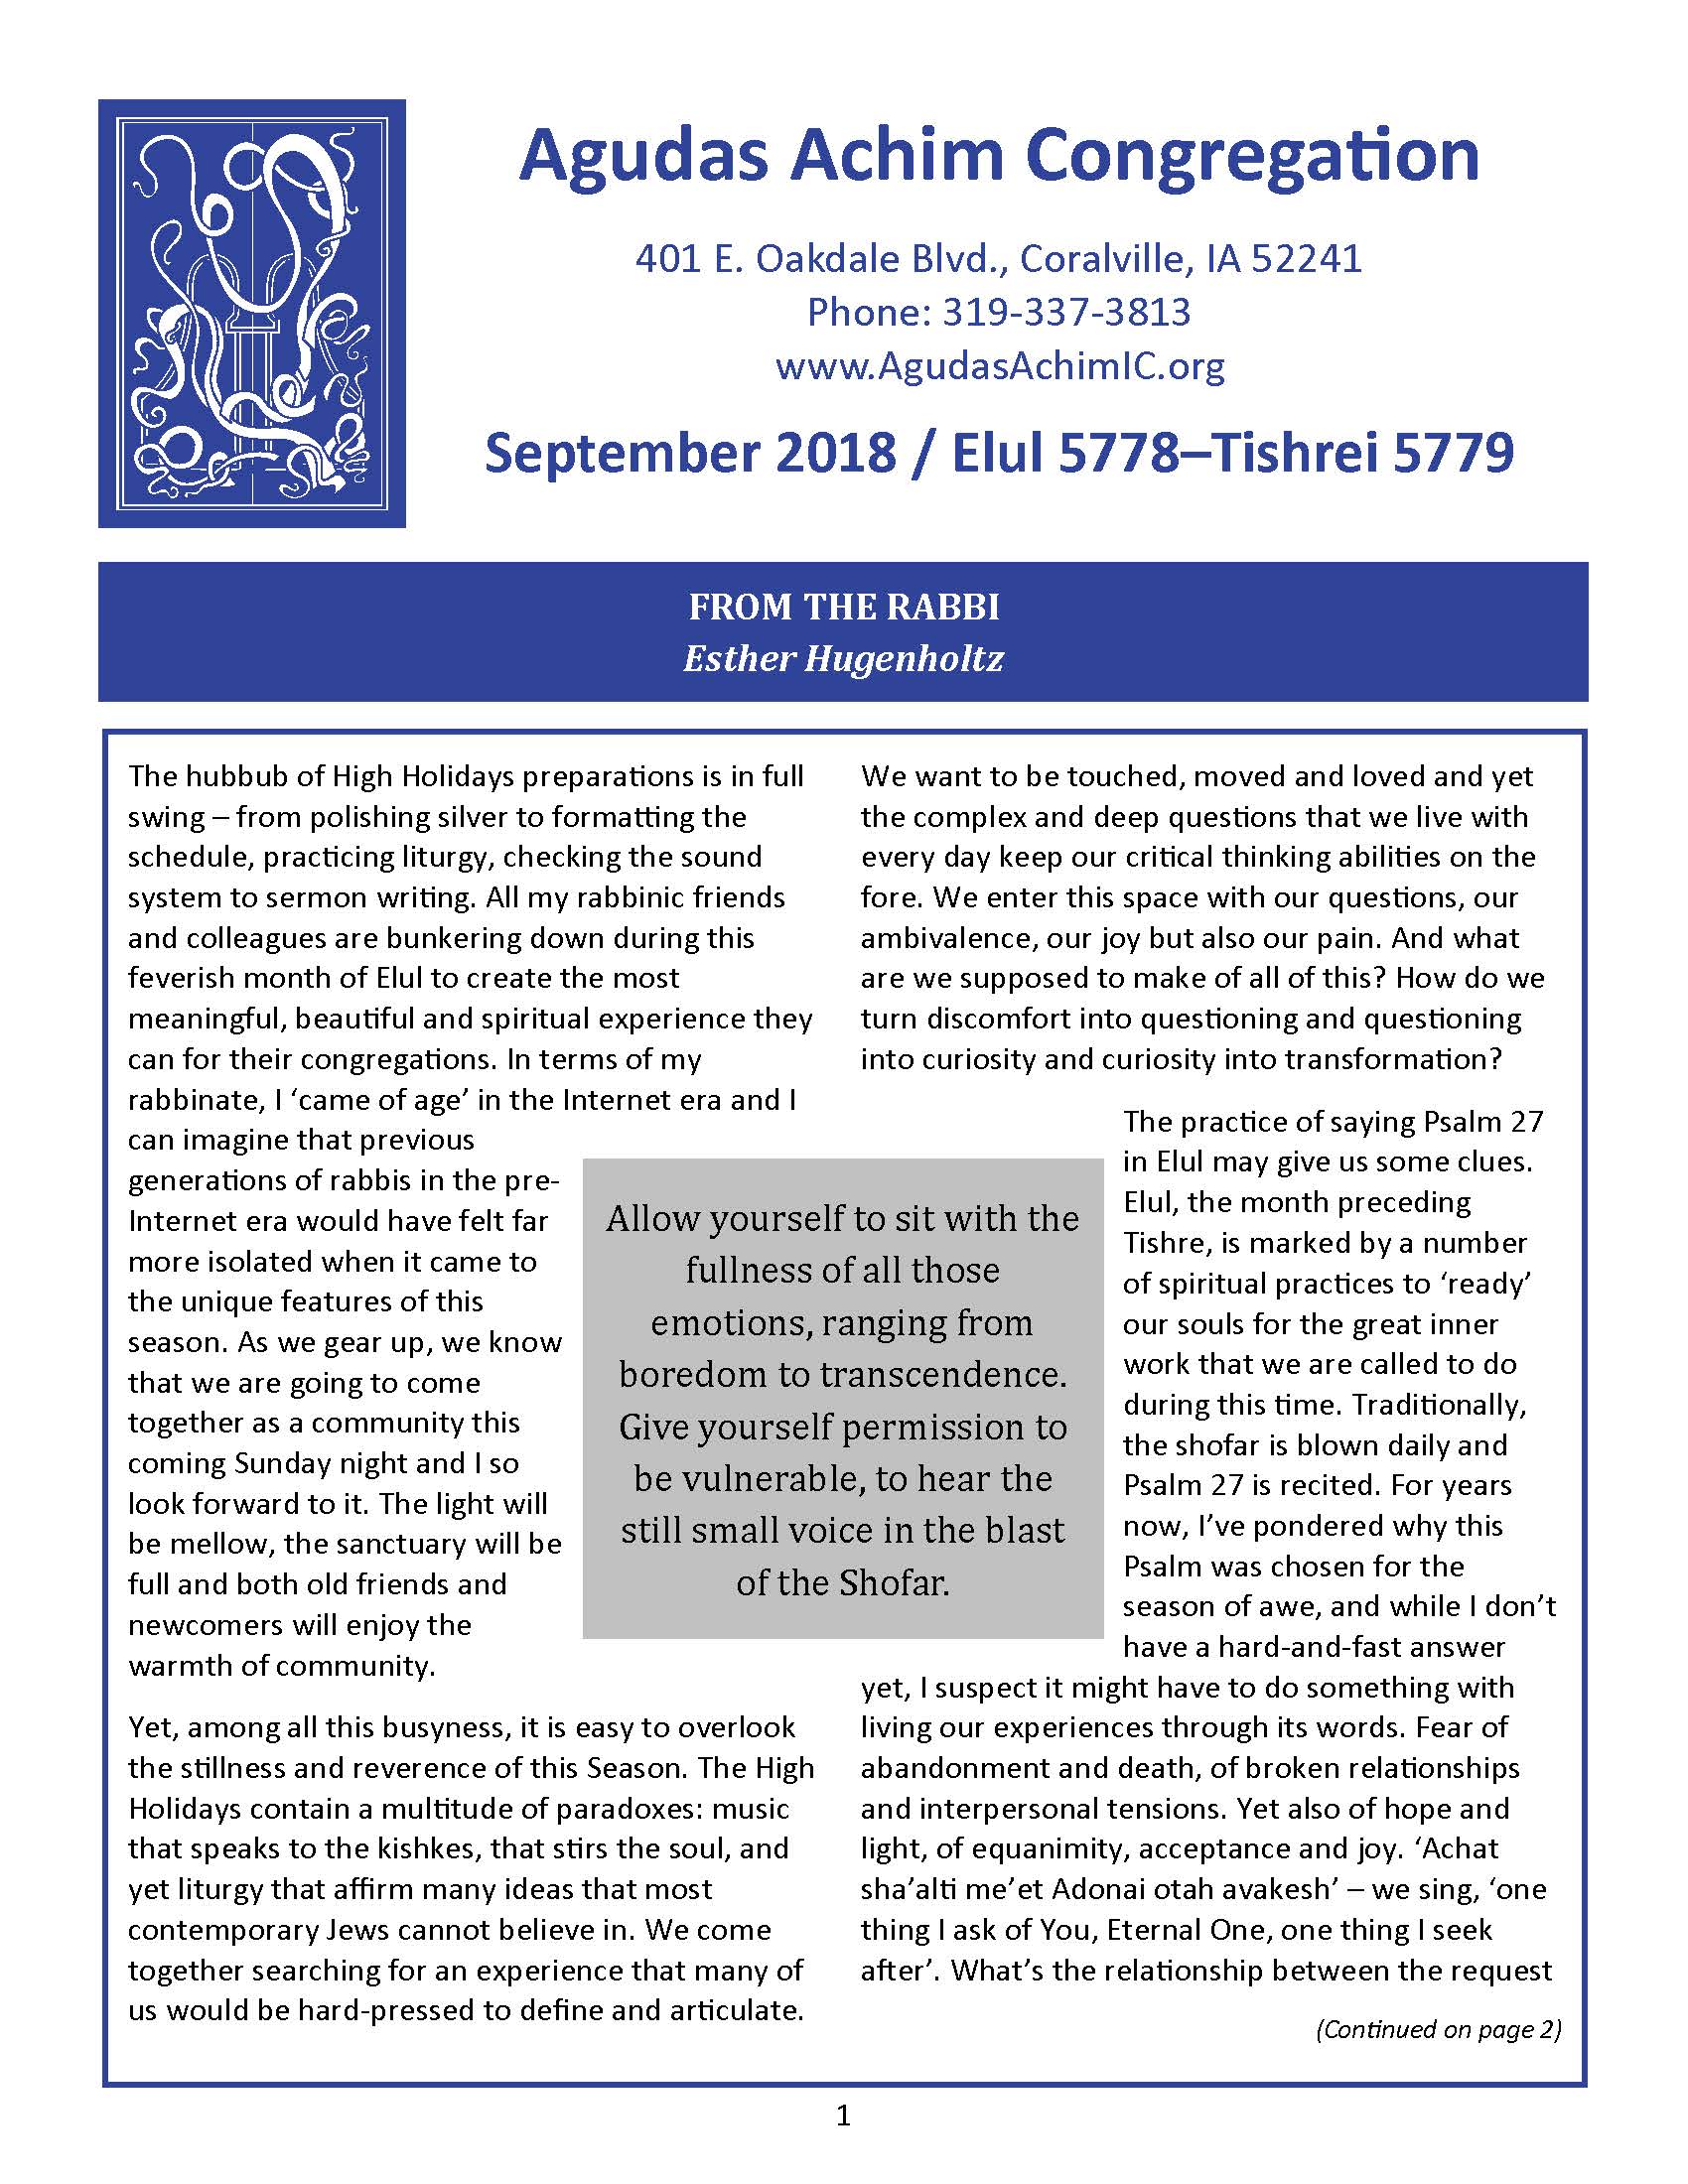 September 2018 Bulletin